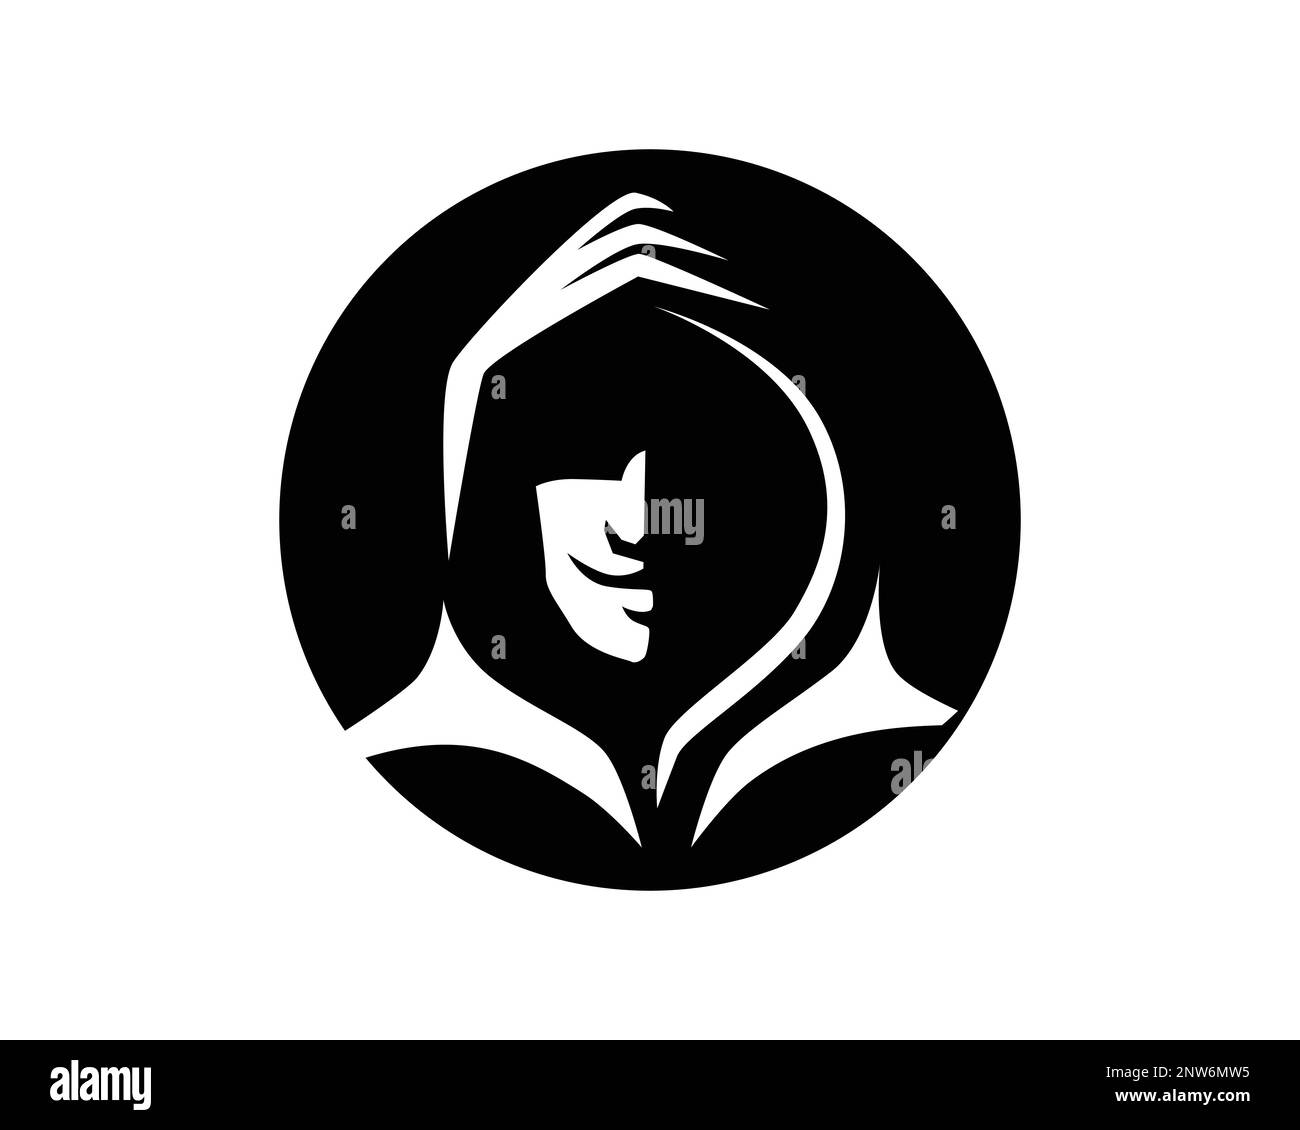 Símbolo simple de Hacker con silueta de capucha oscura Ilustración del Vector